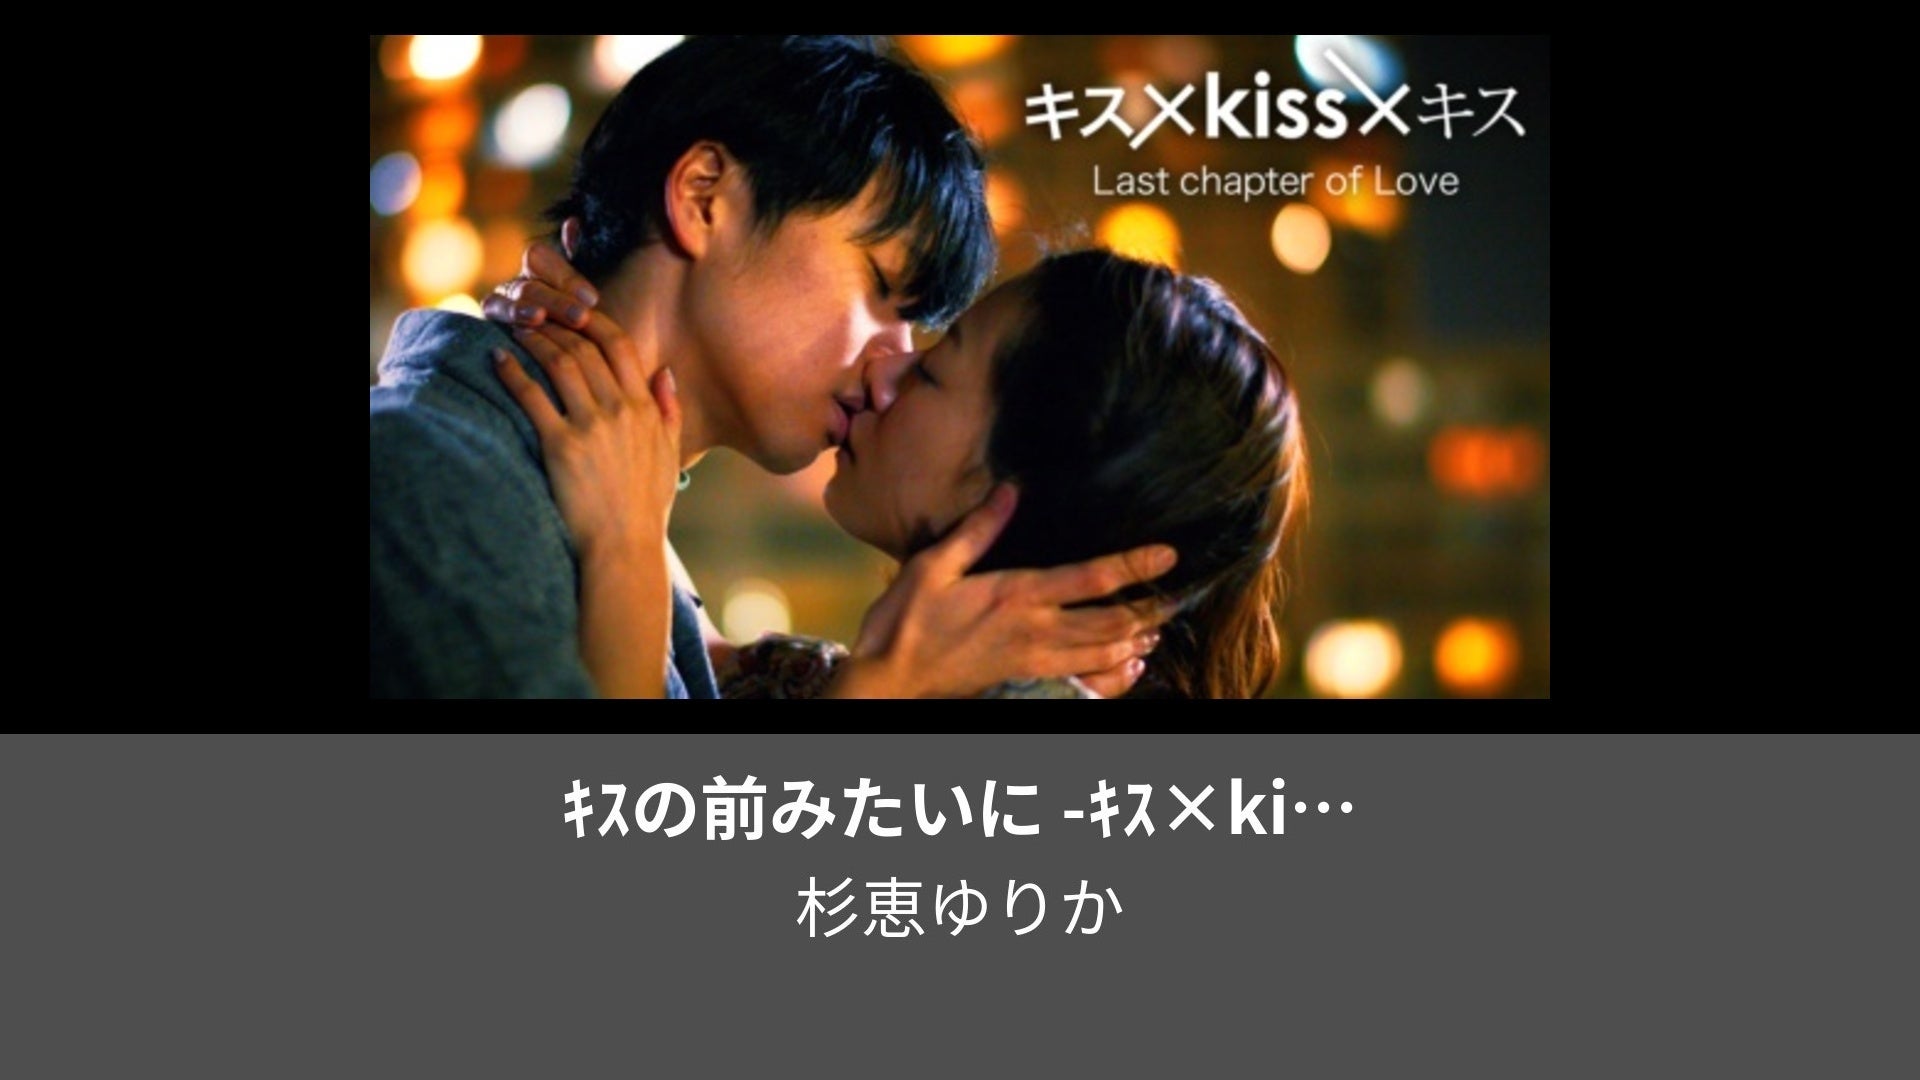 キス×kiss×キス Last chapter of Love